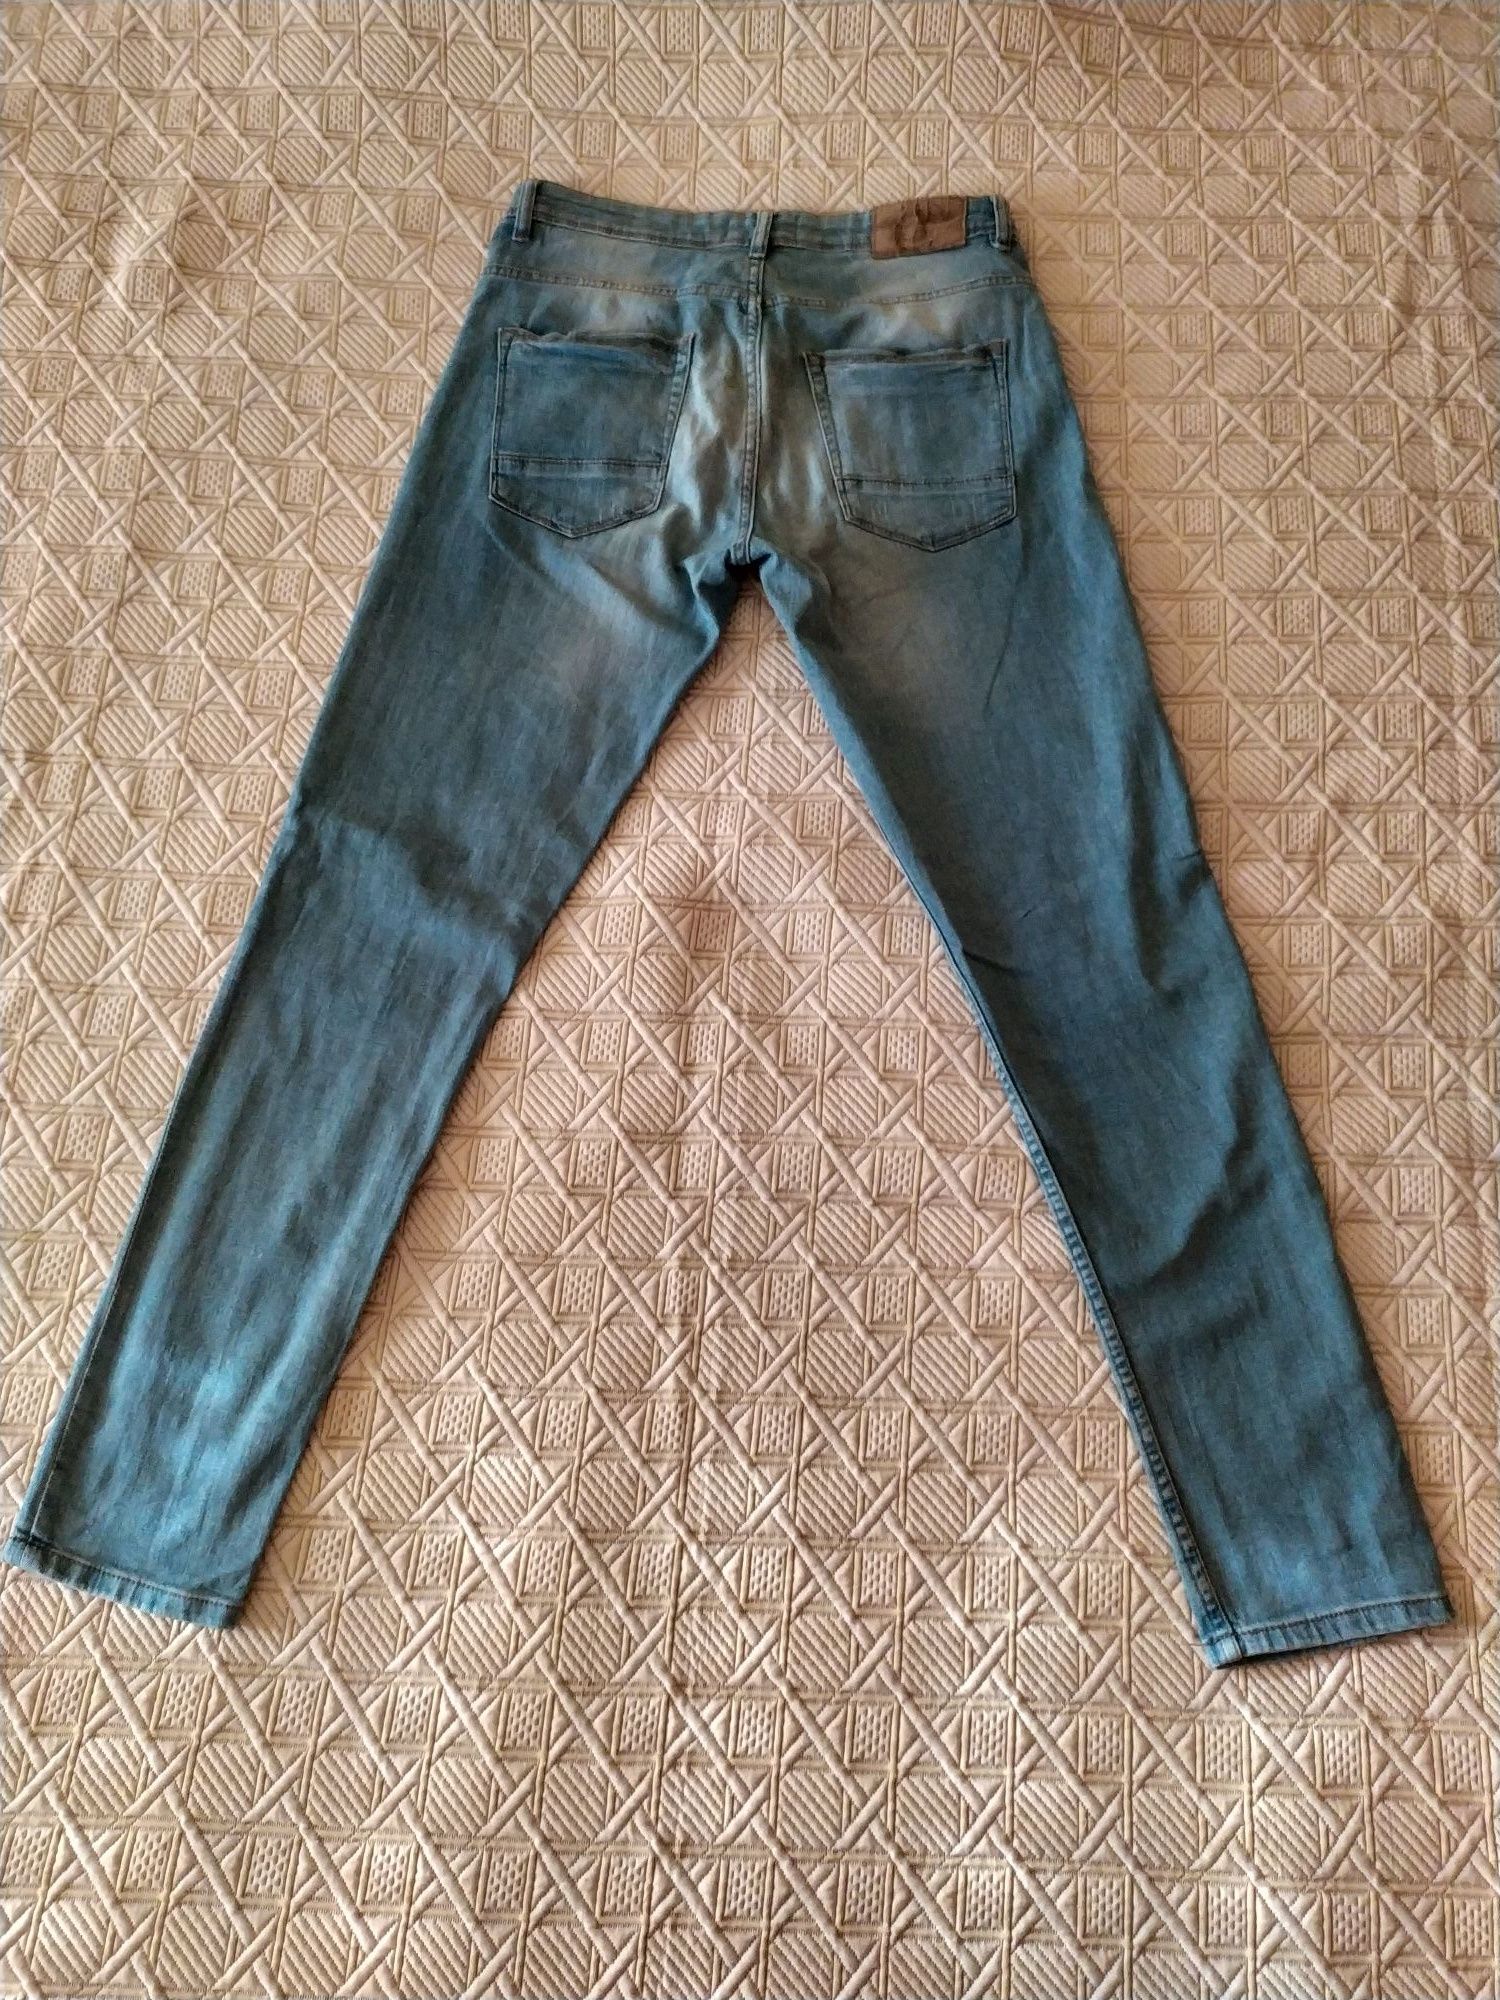 Calças jeans Lefties 40 + LFTDNM 42